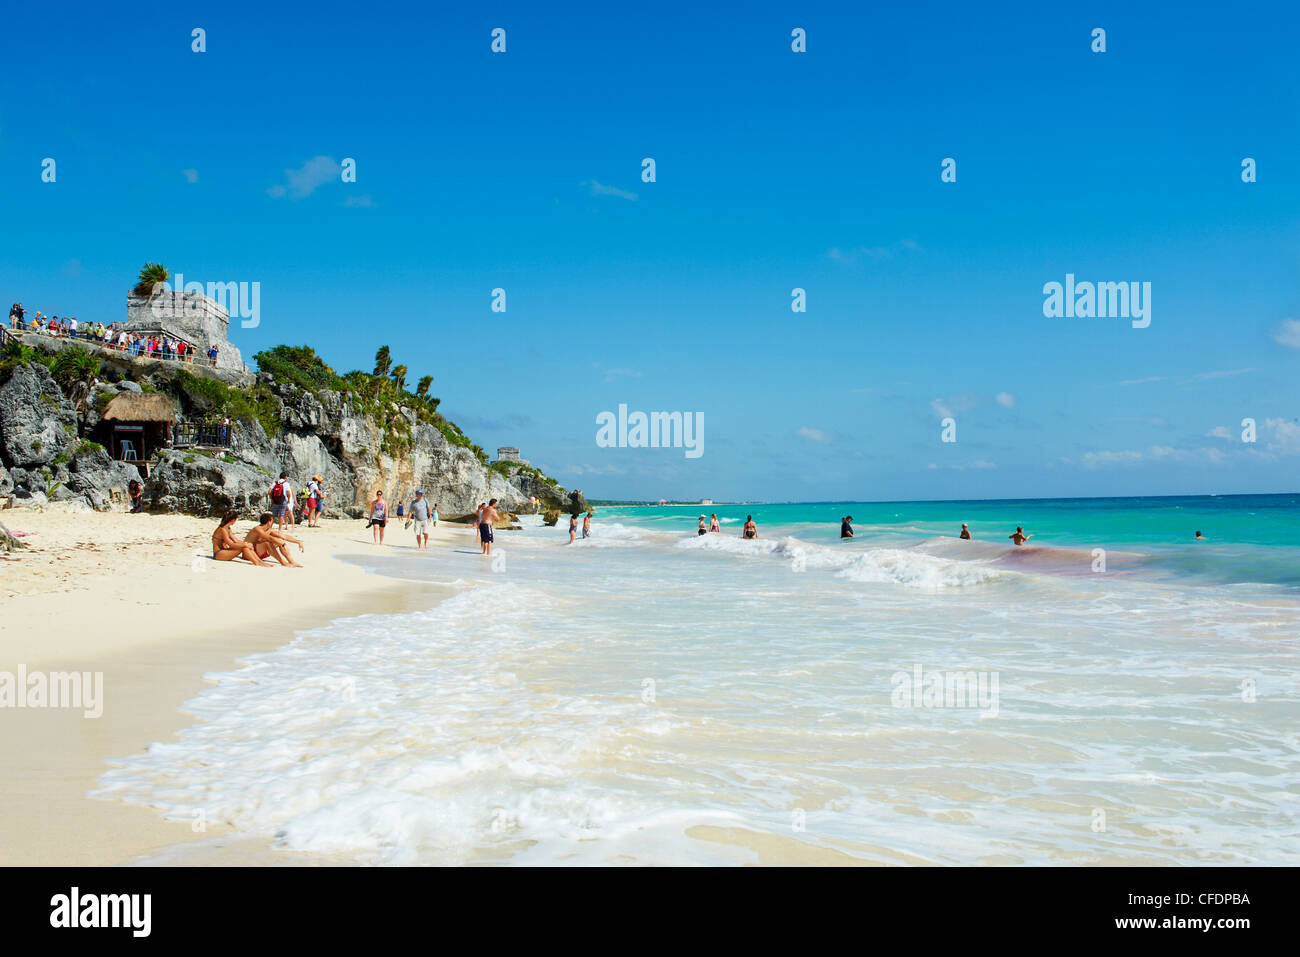 Spiaggia sulla costa caraibica al di sotto dell'antico sito Maya di Tulum, Quintana Roo, Messico Foto Stock